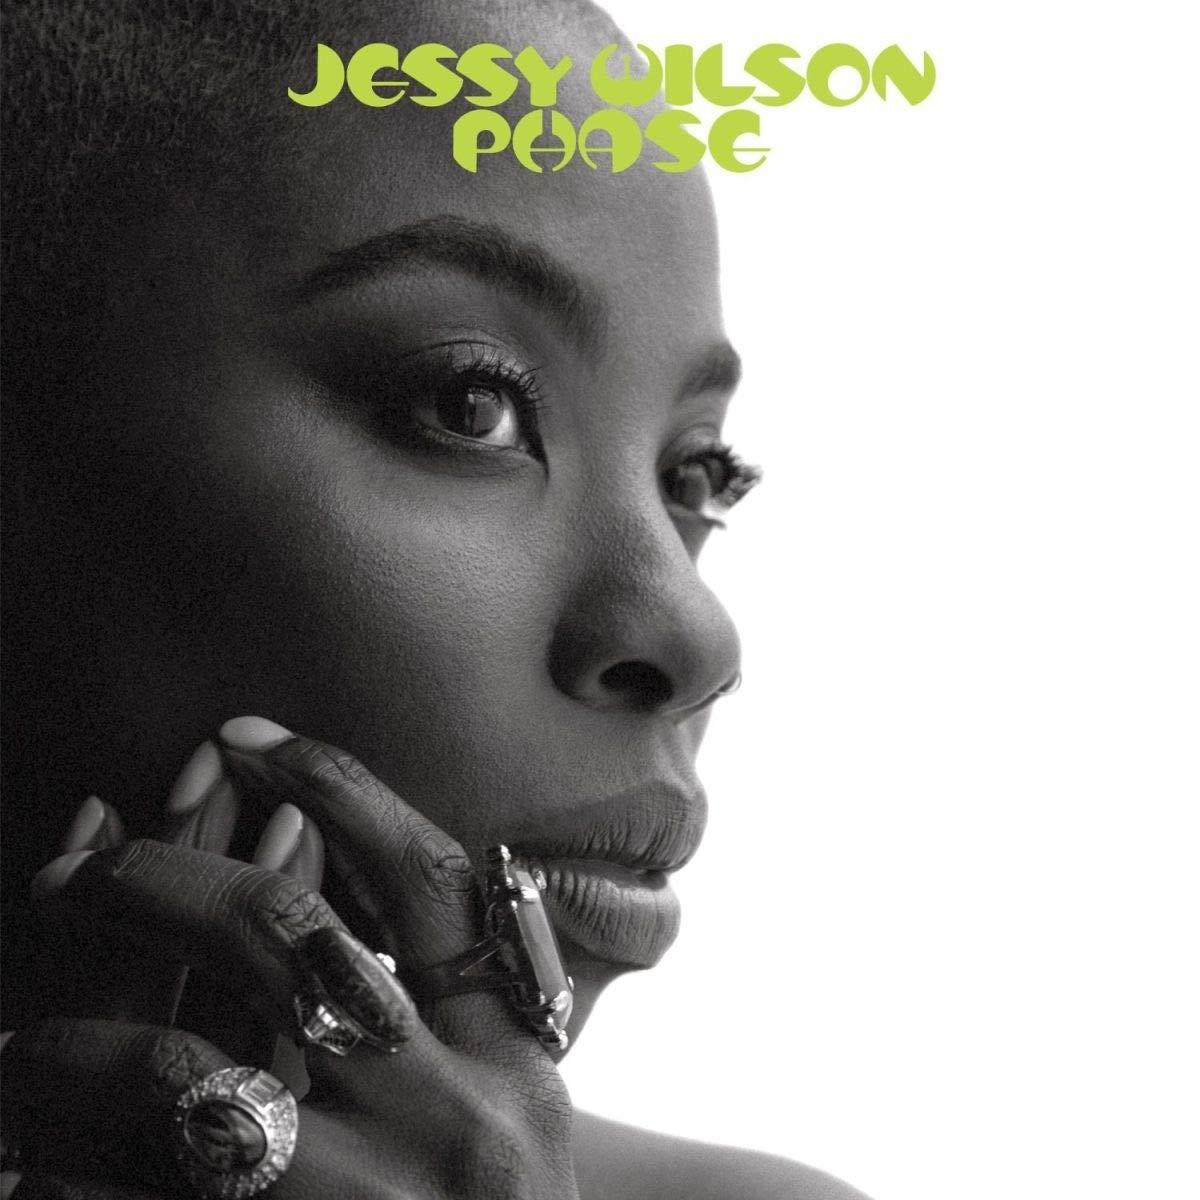 Wilson - Jessy - (CD) Phase